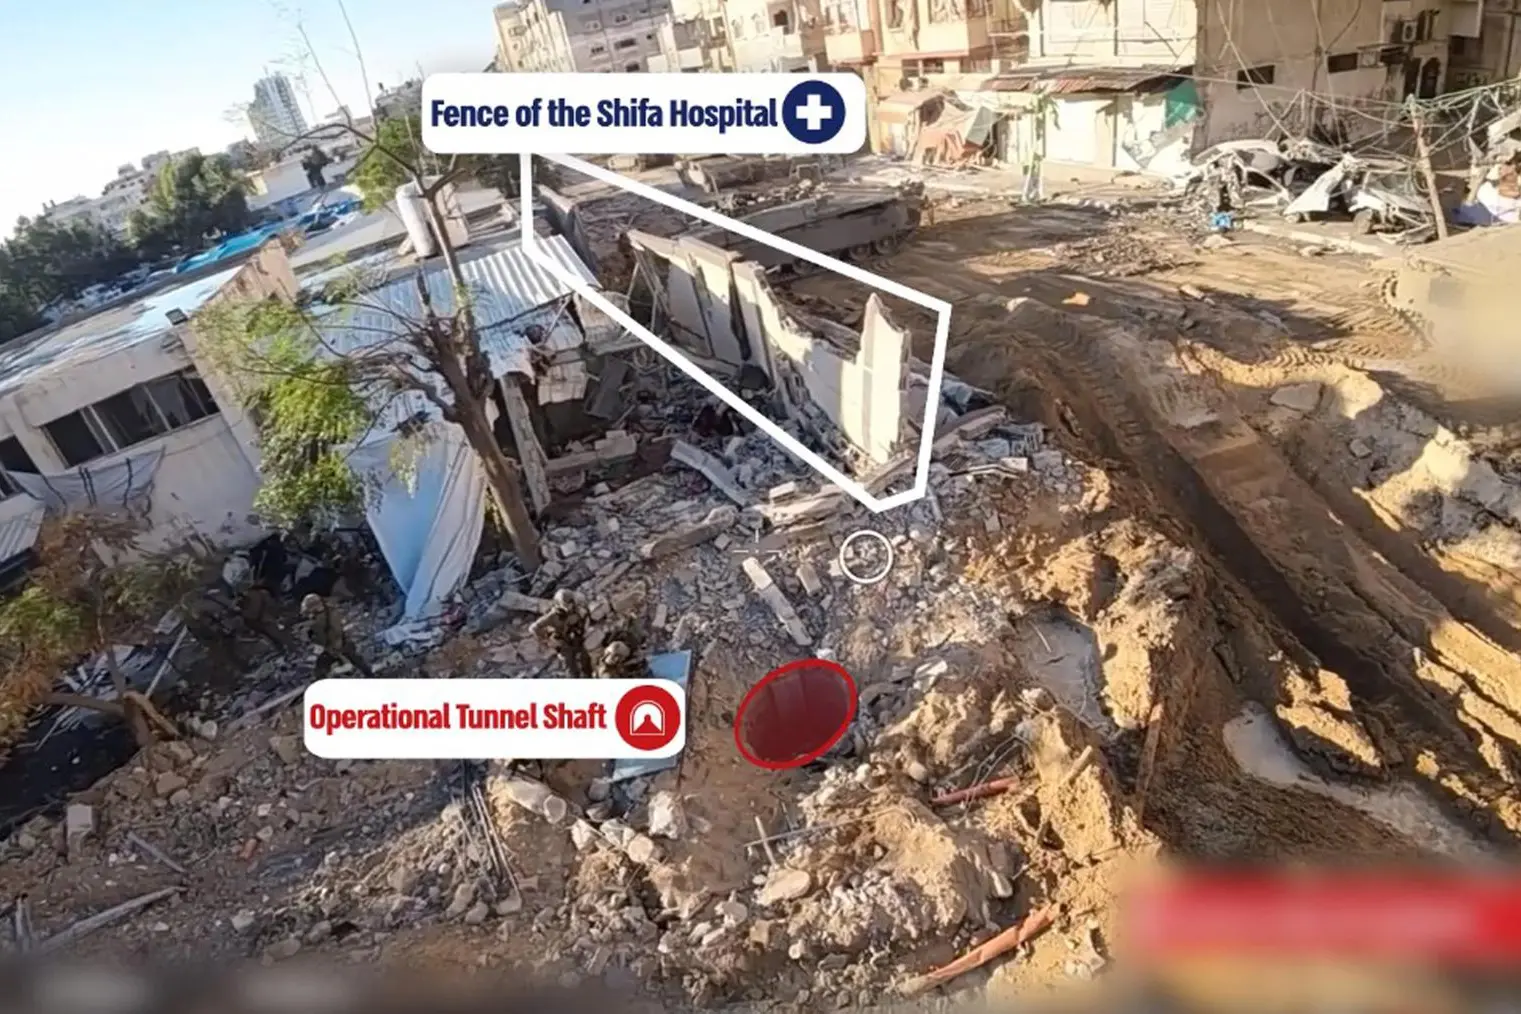 Fermo immagine del video diffuso dall'esercito di Israele (Ansa)